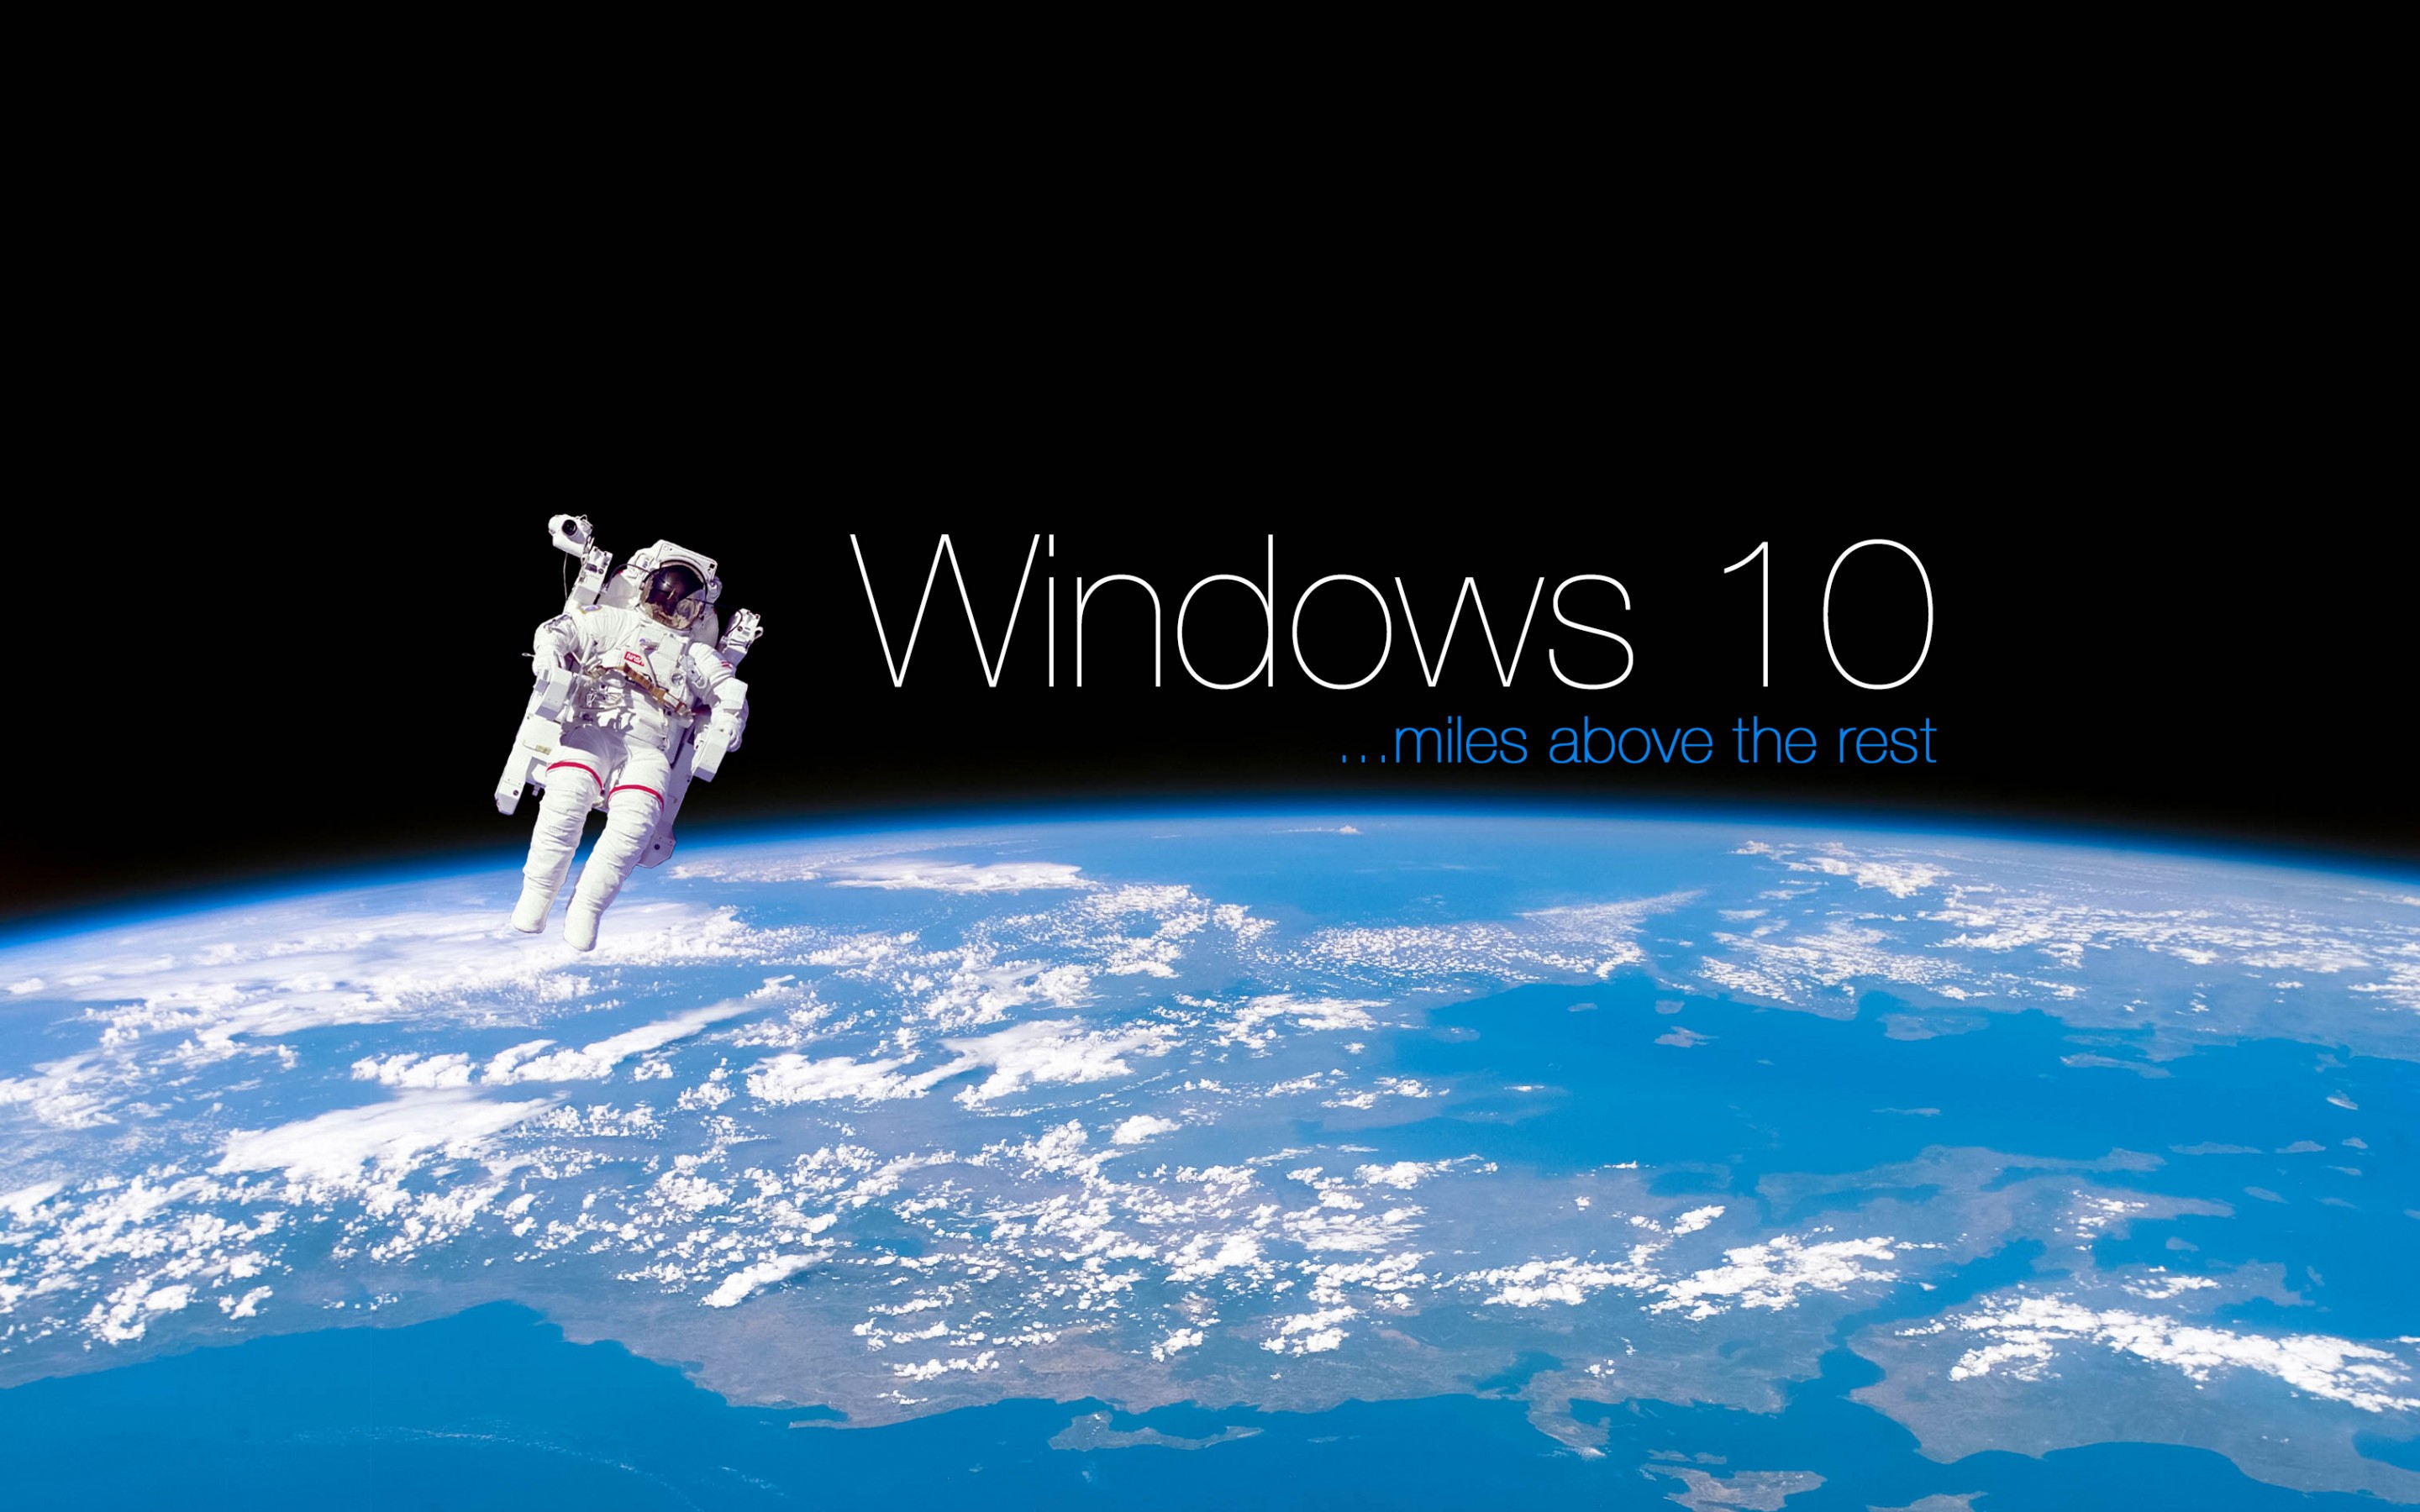 微软windows 10主题宽屏电脑壁纸 华军新闻网